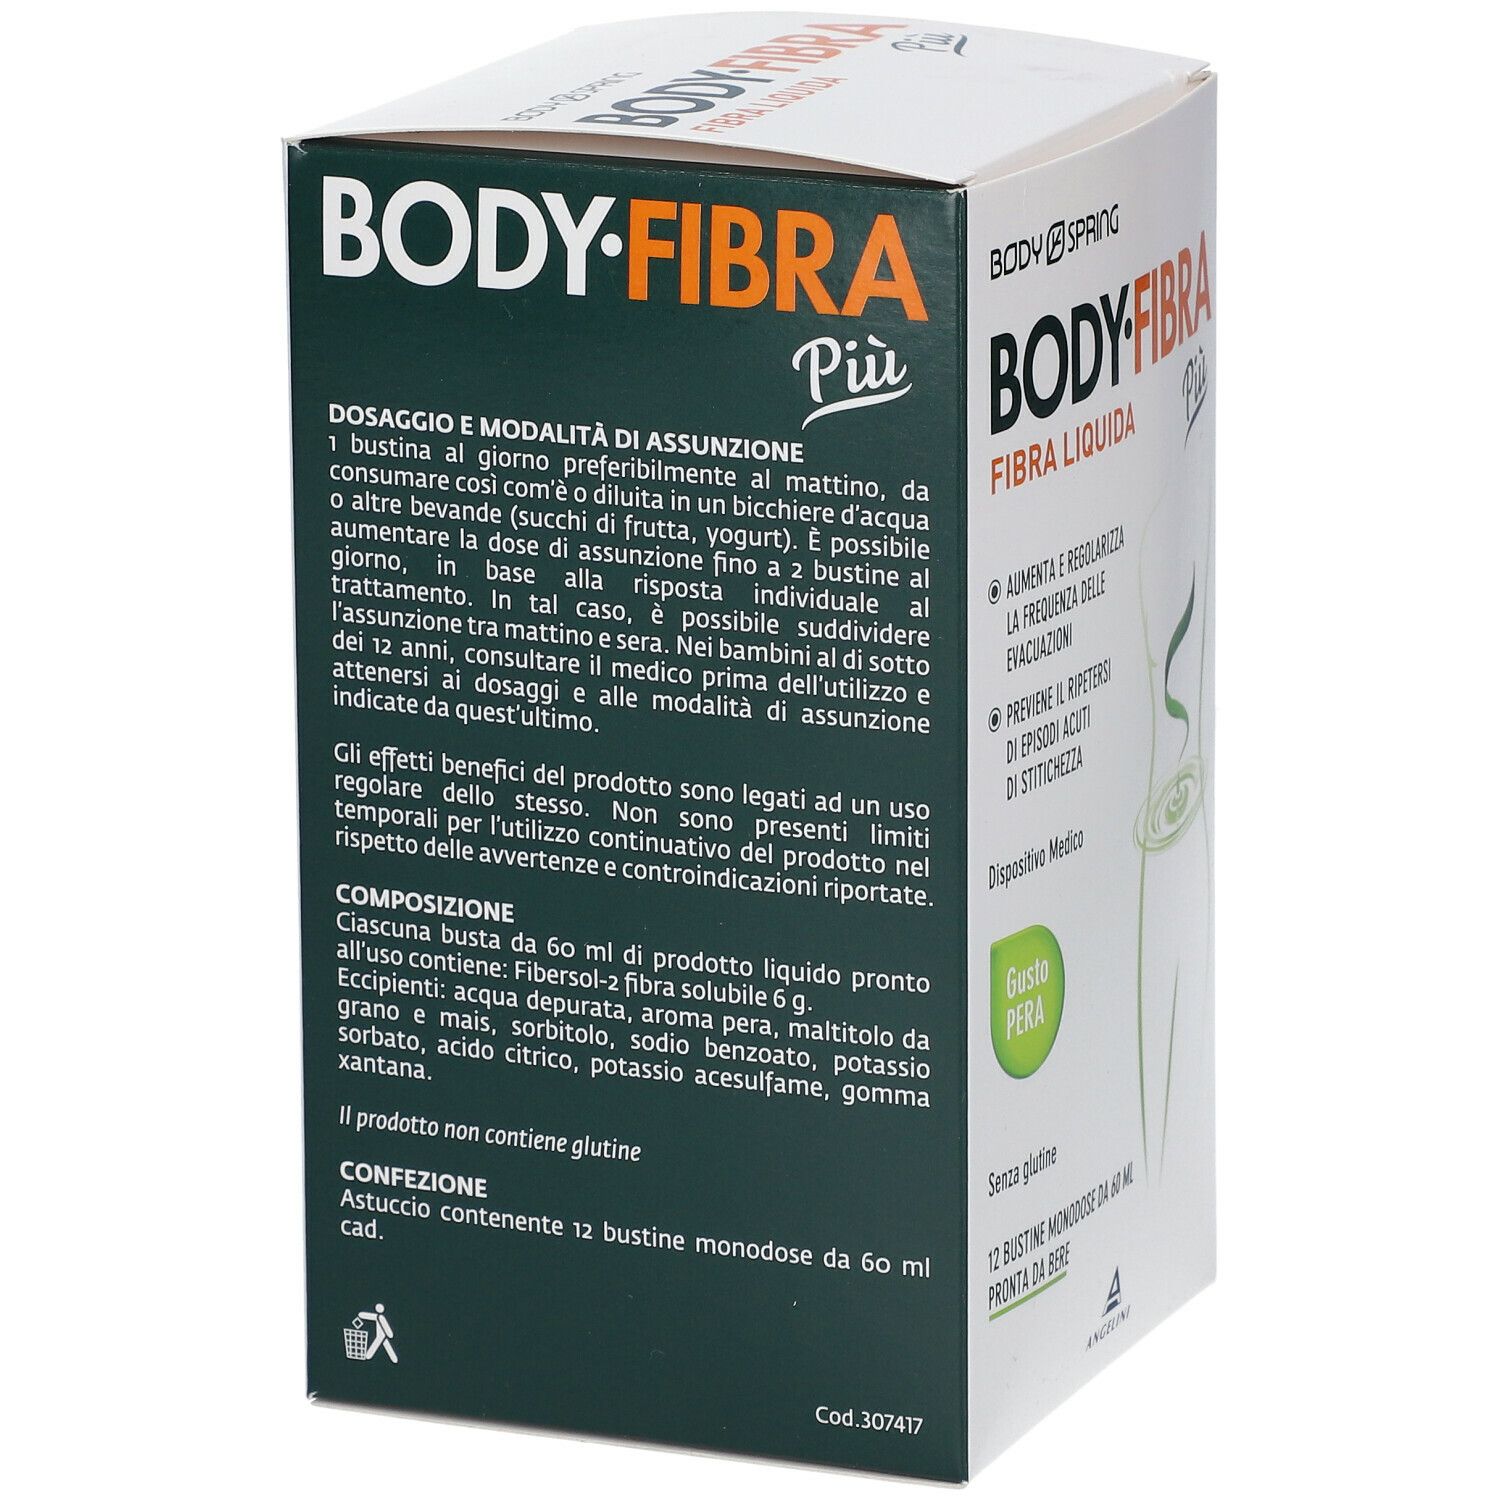  BODY-FIBRA Più fibra liquida